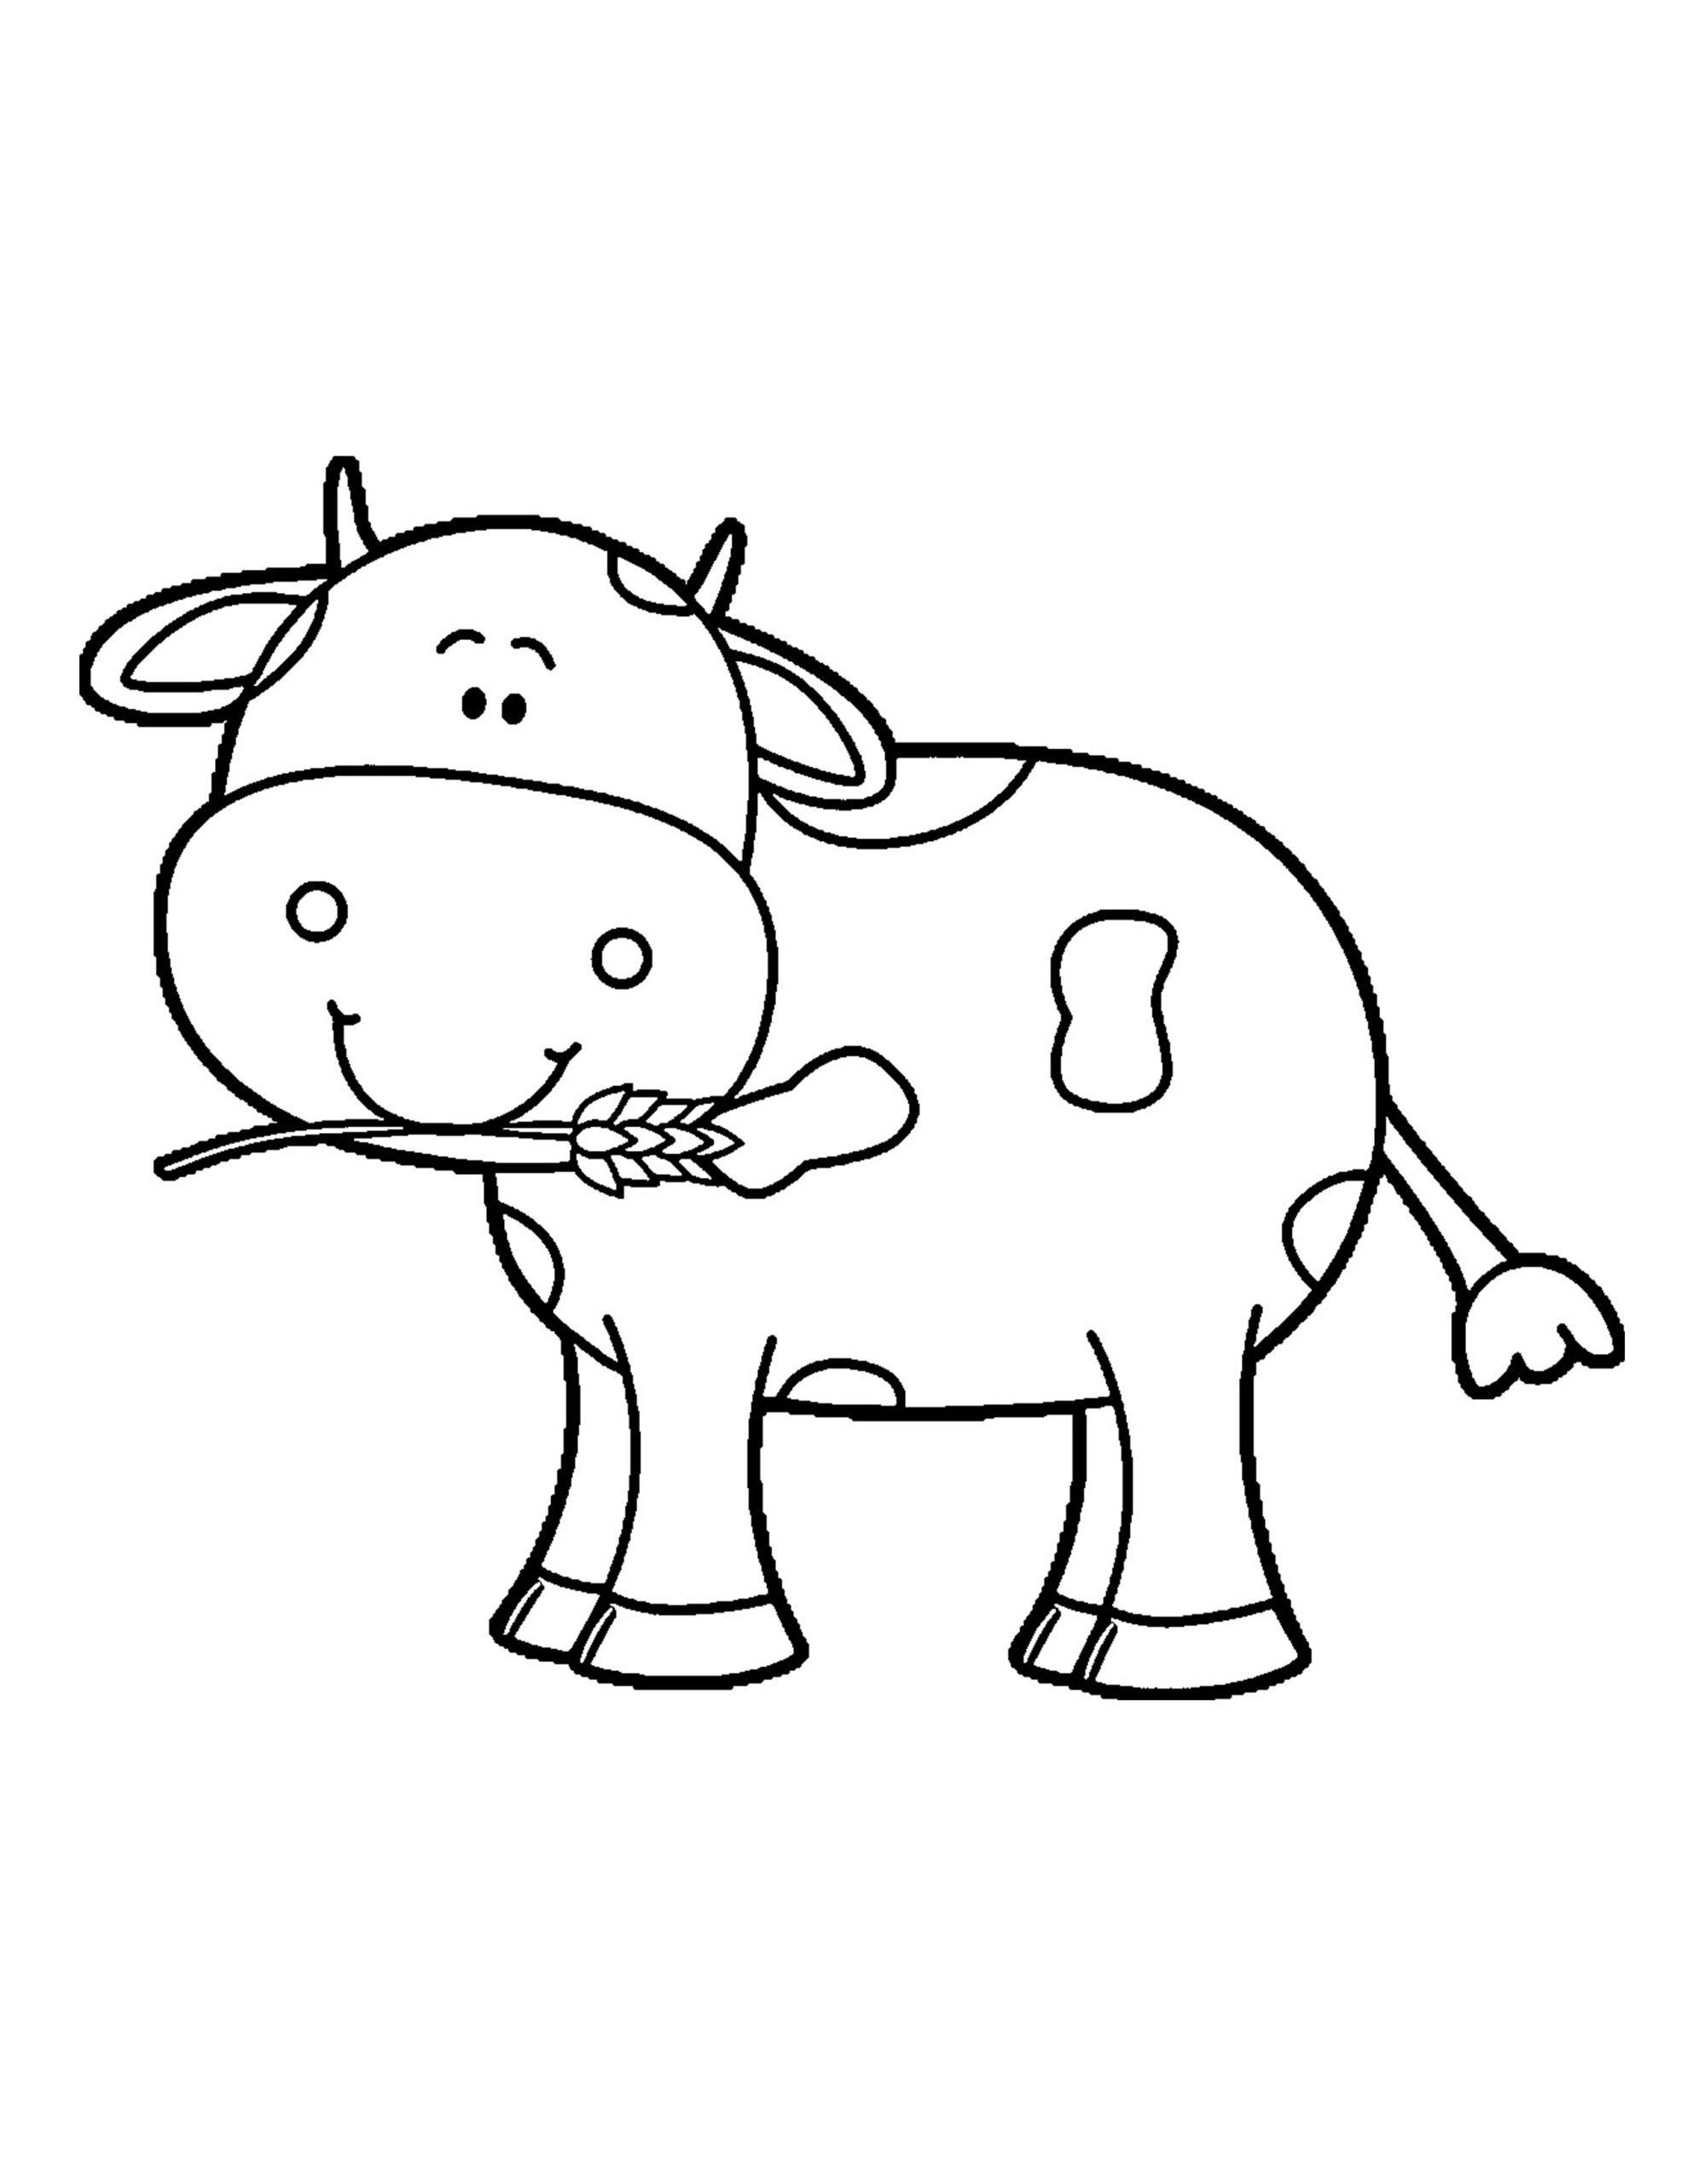 Tranh tô màu con bò - TRƯỜNG THPT TRẦN HƯNG ĐẠO